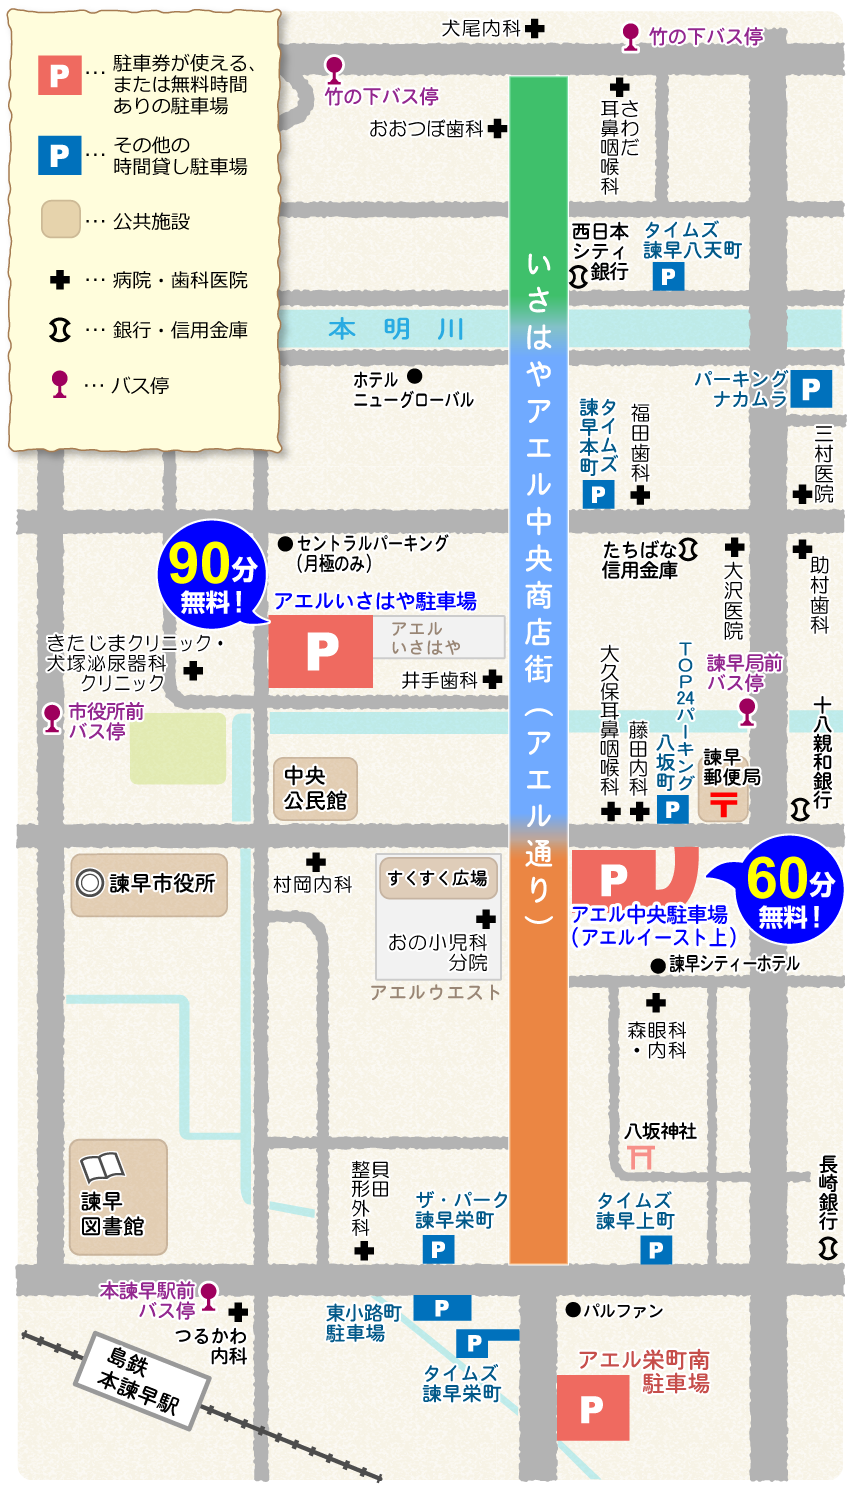 アエル中央商店街周辺の駐車場・公共施設・病院マップ